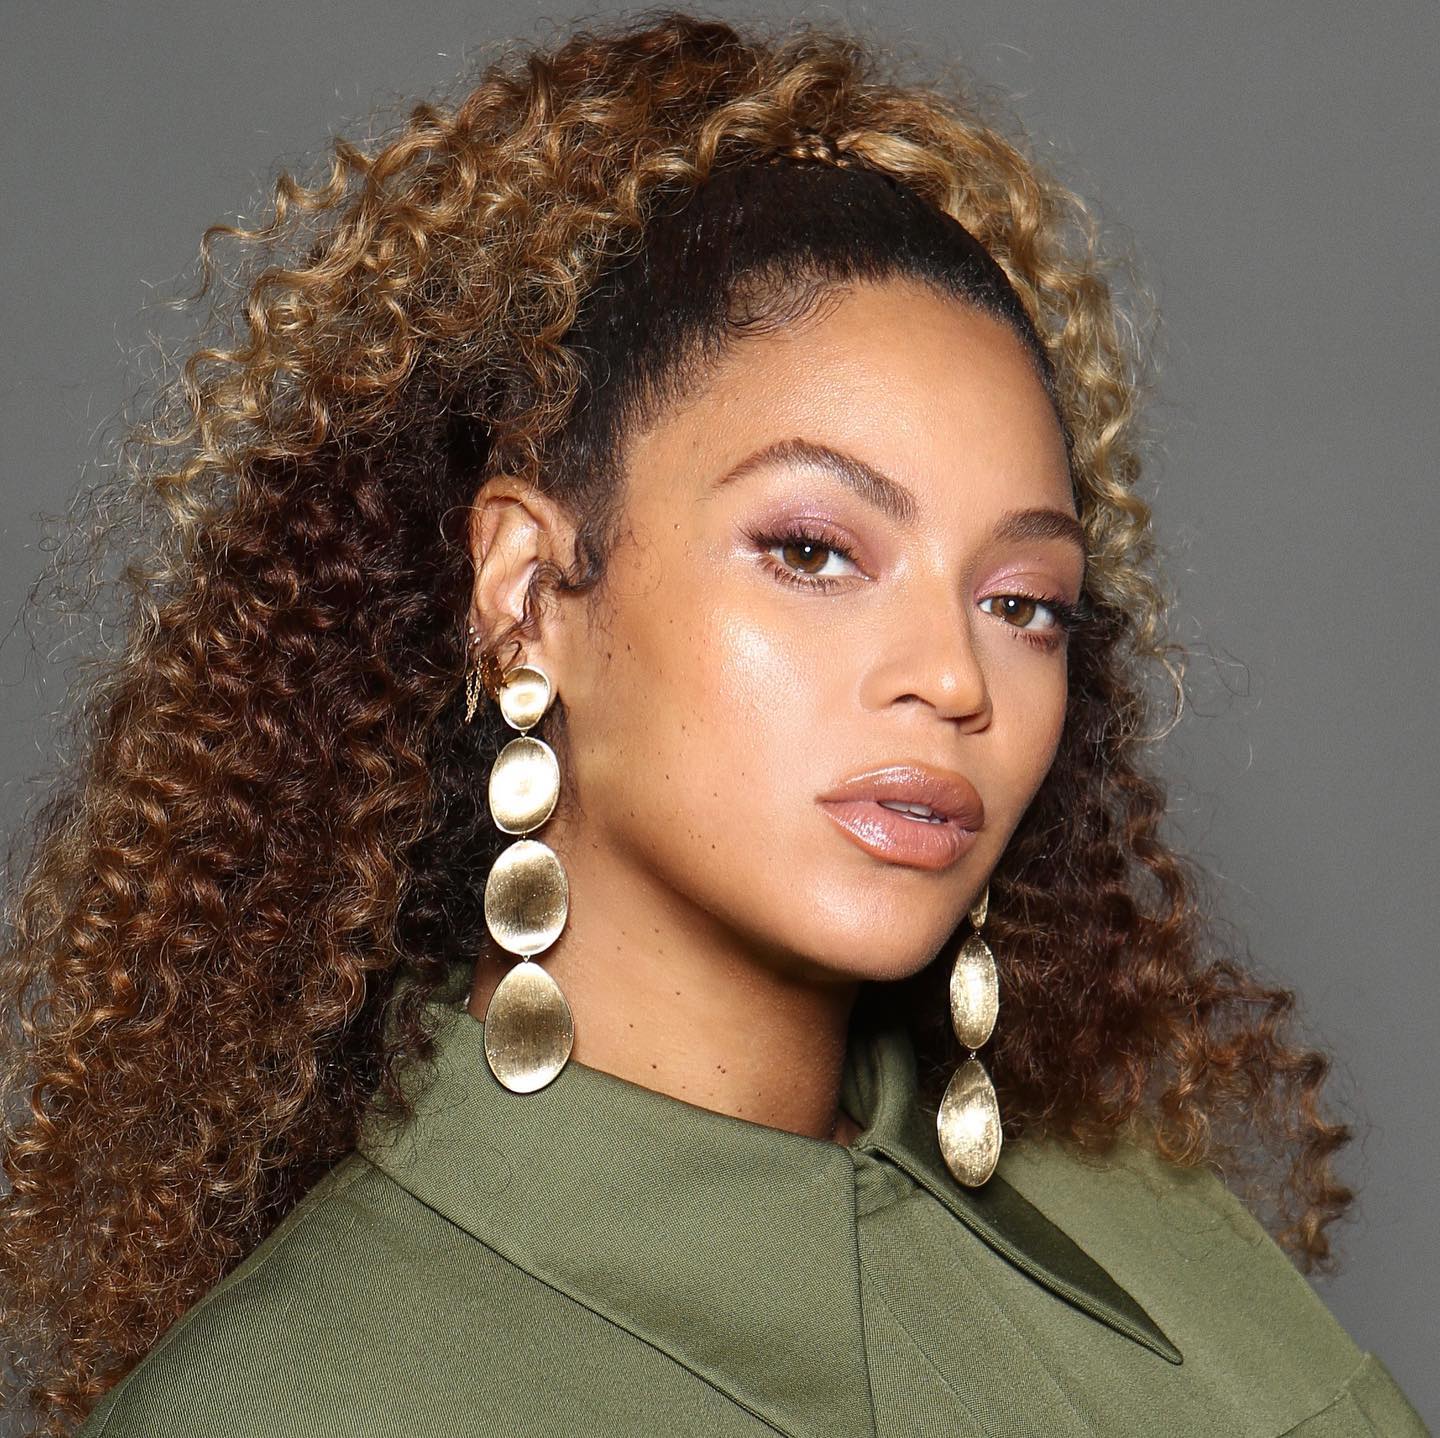 La cantante Beyoncé posa con un maquillaje en tonos nude y su característico pelo rizado recogido la mitad en un moño alto